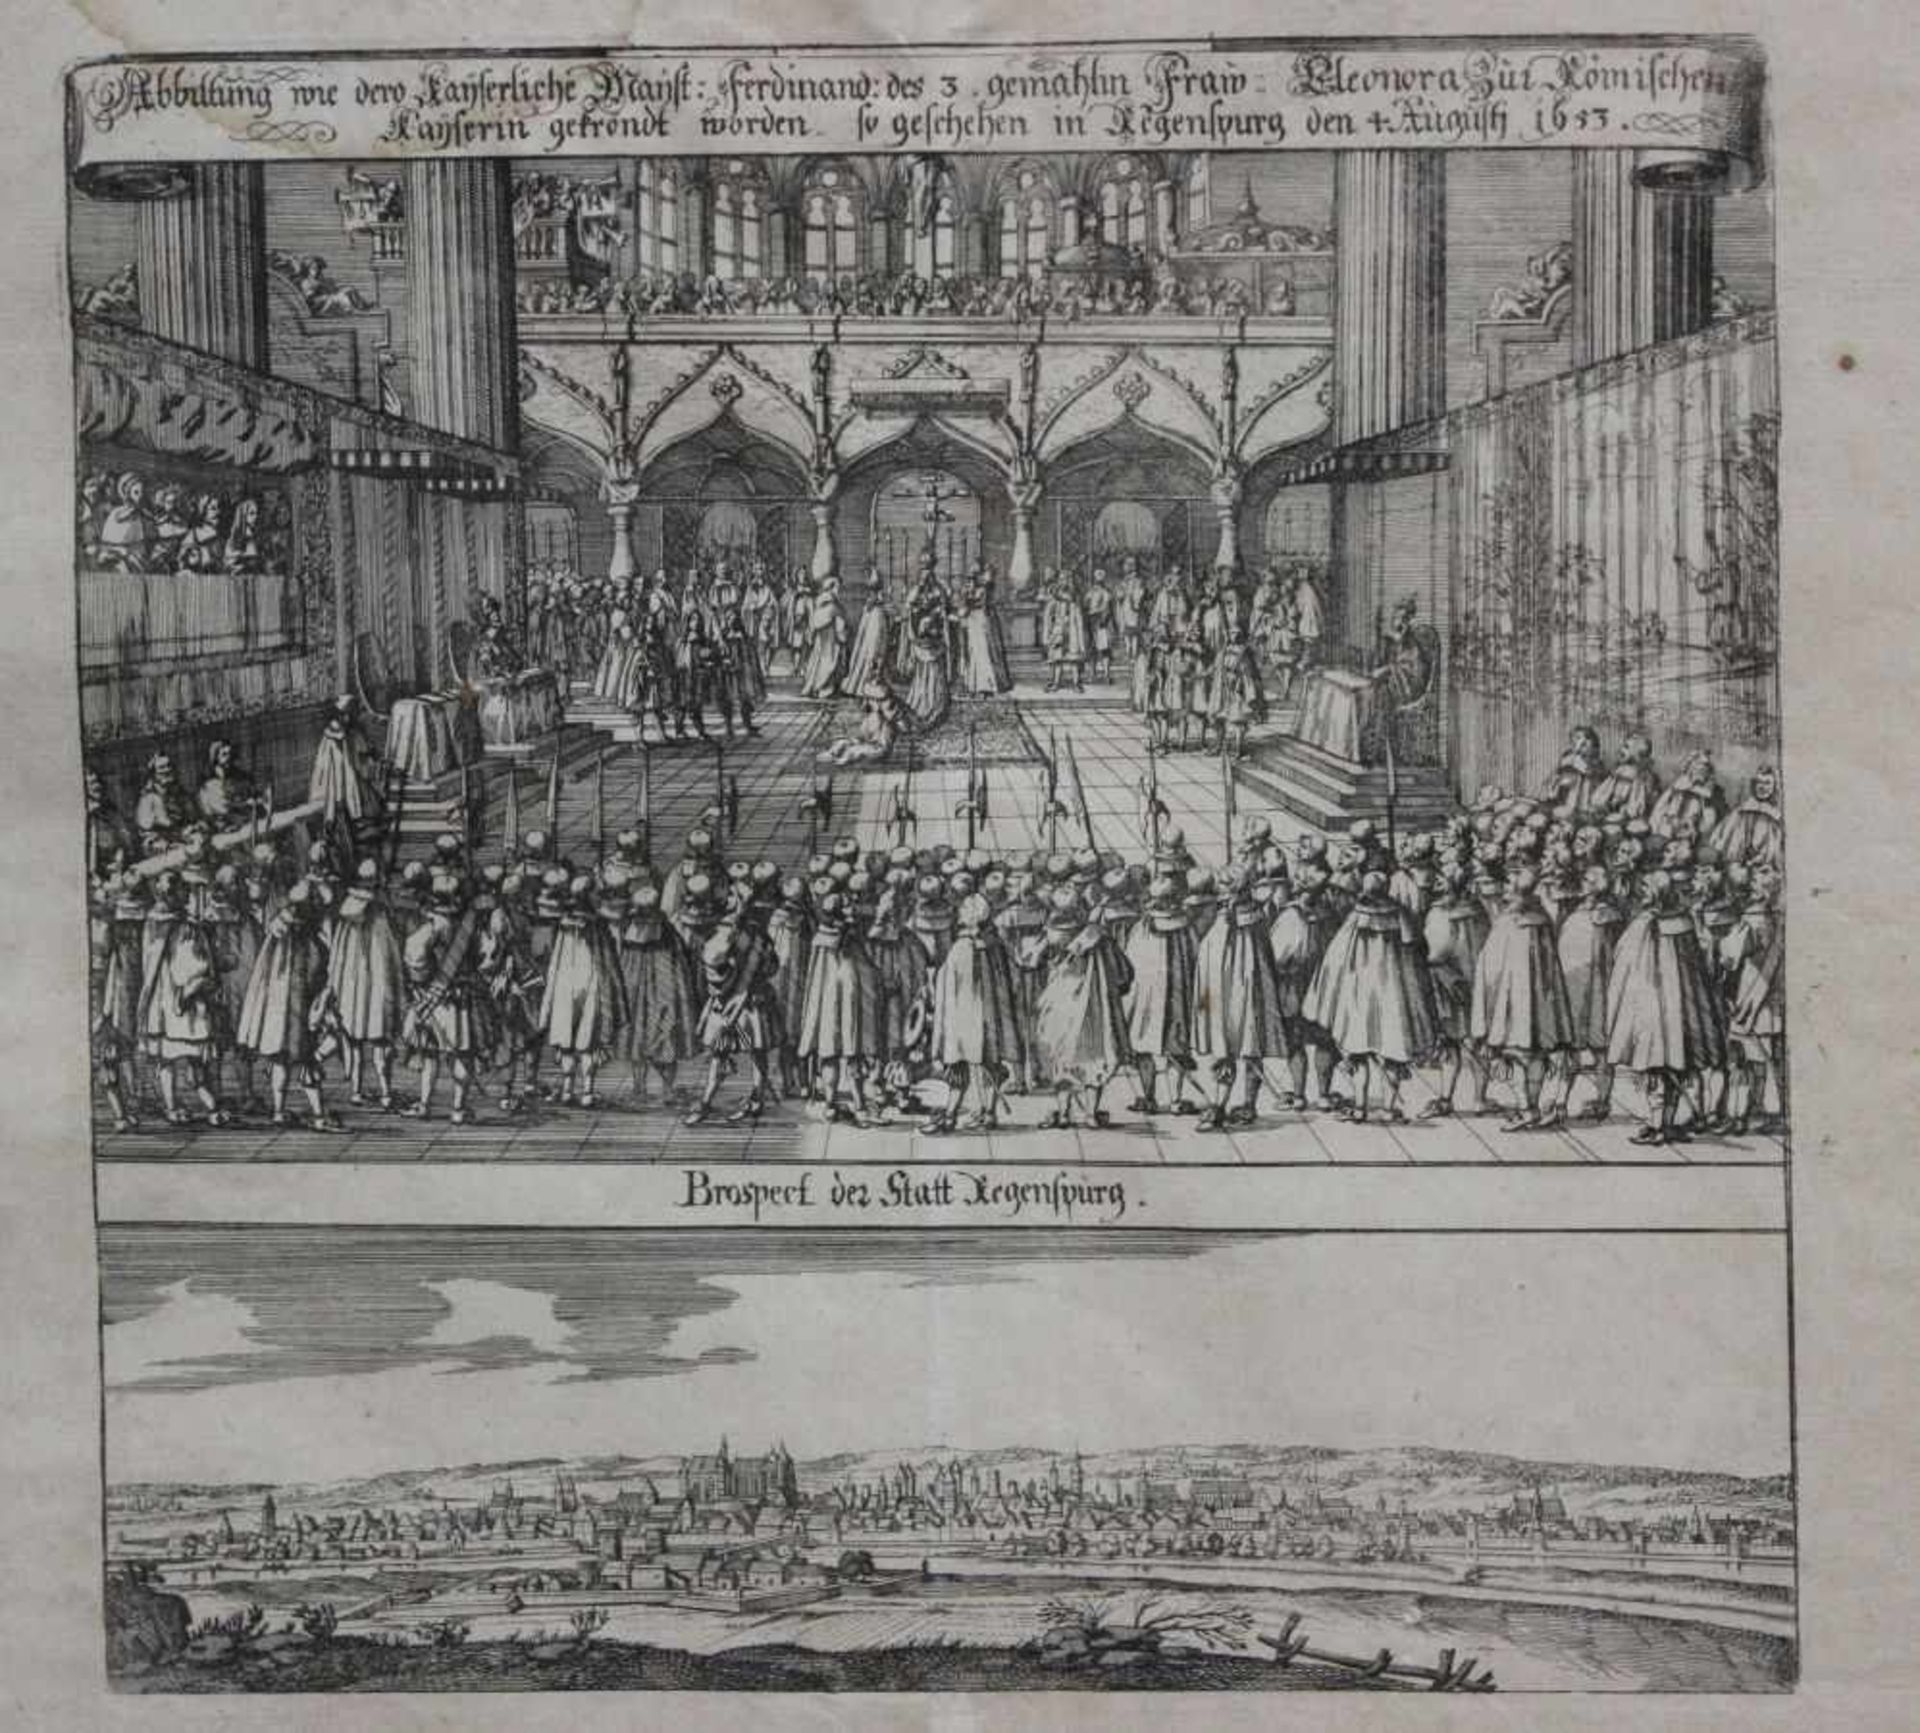 Kupferstich - Matthäus Merian (1593 Basel - 1650 Langenschwalbach) "Abbildung wie dero Kayserliche